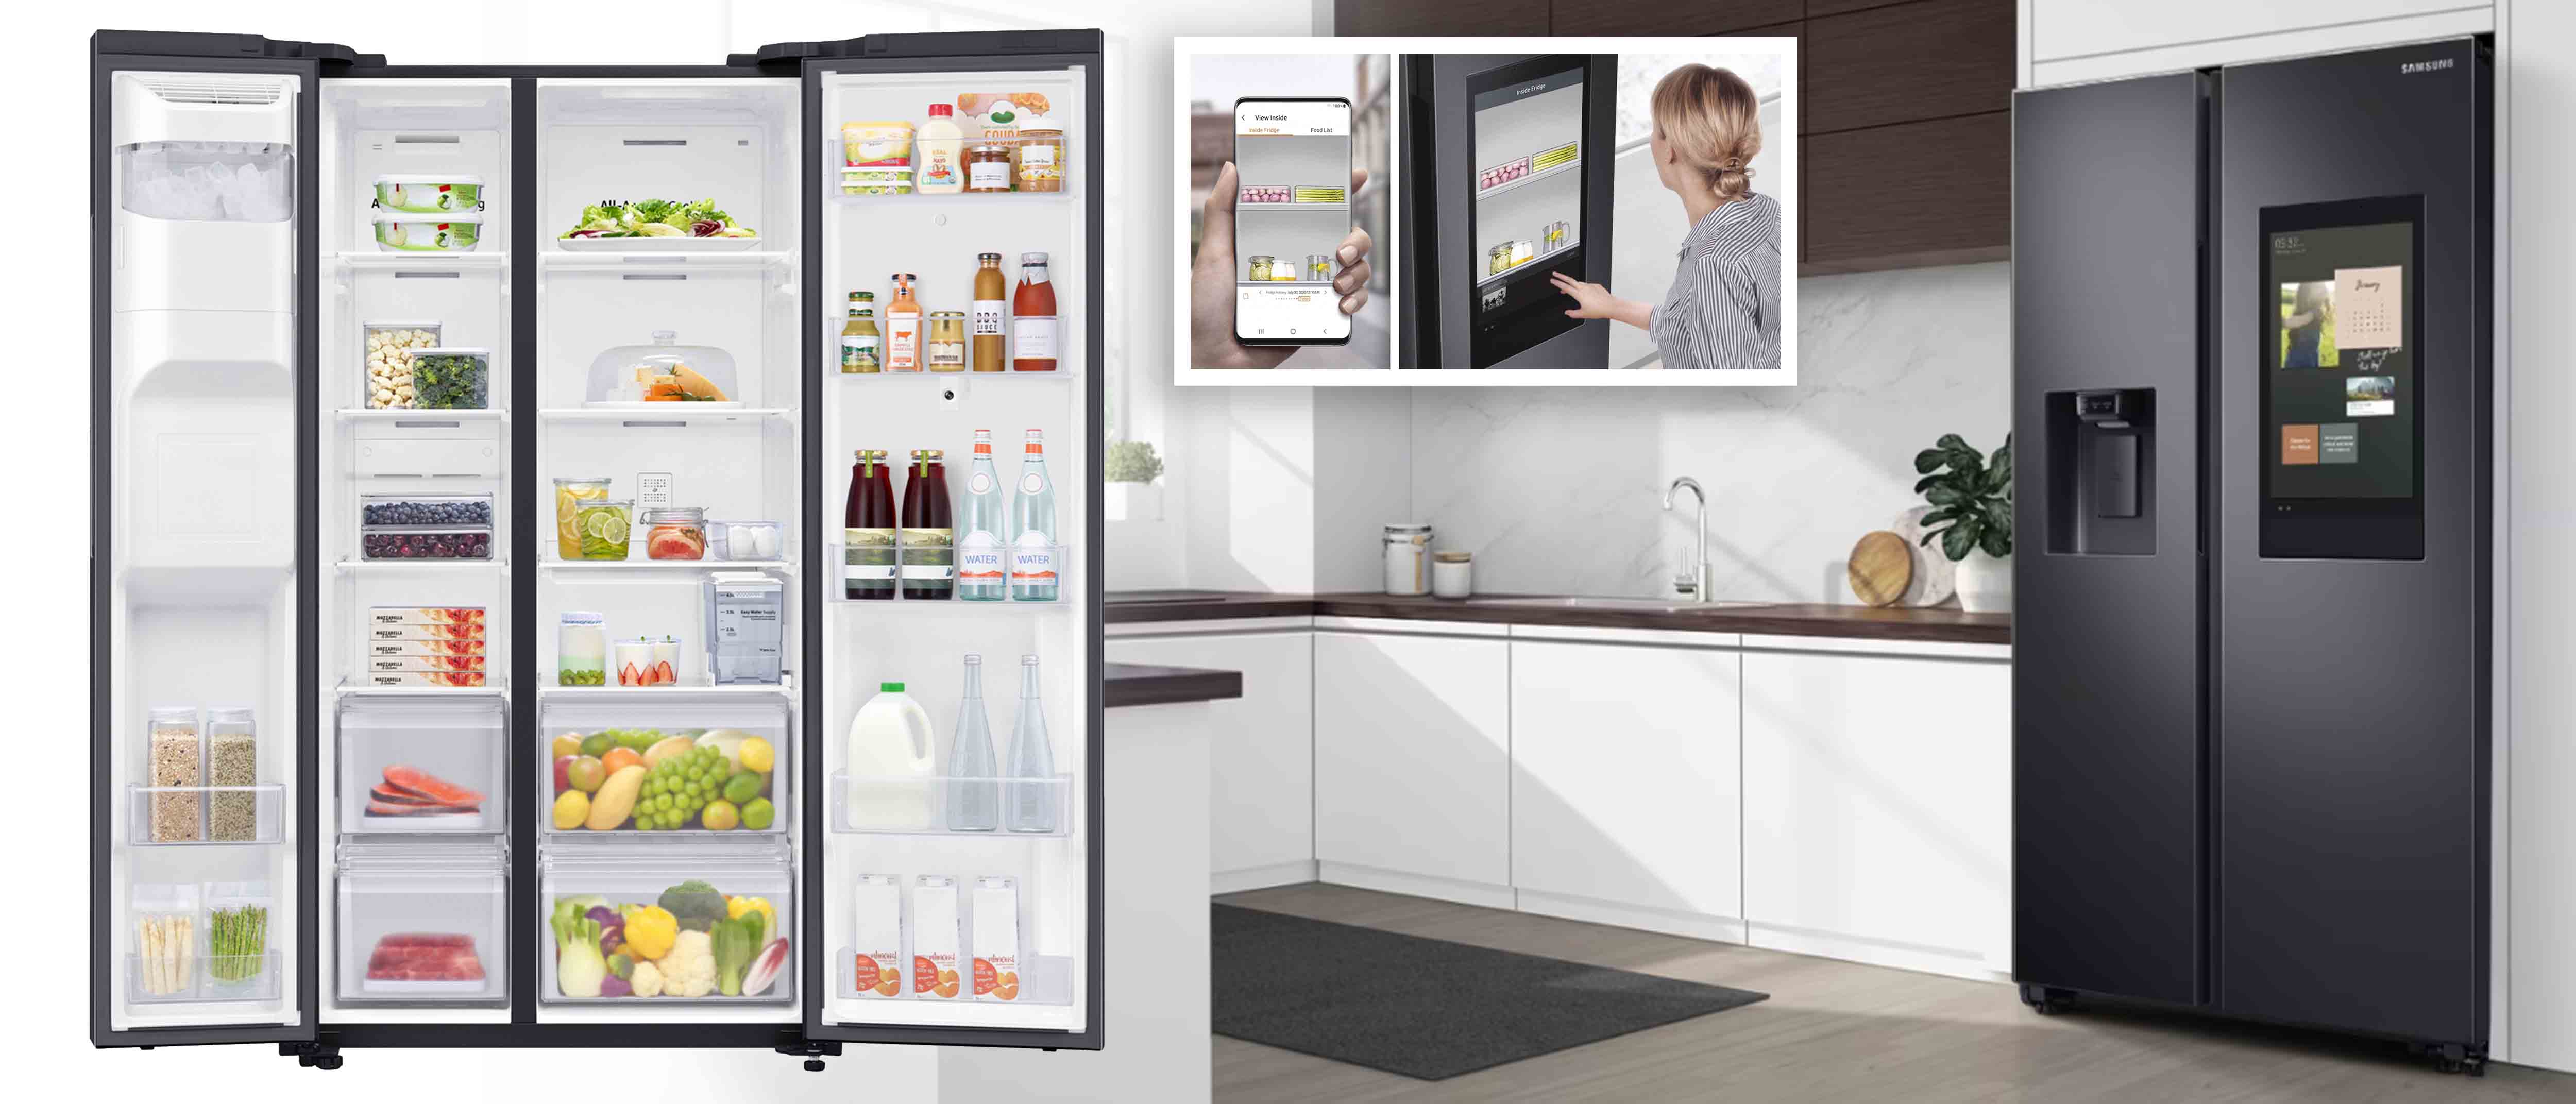 ตู้เย็น Side by side SAMSUNG